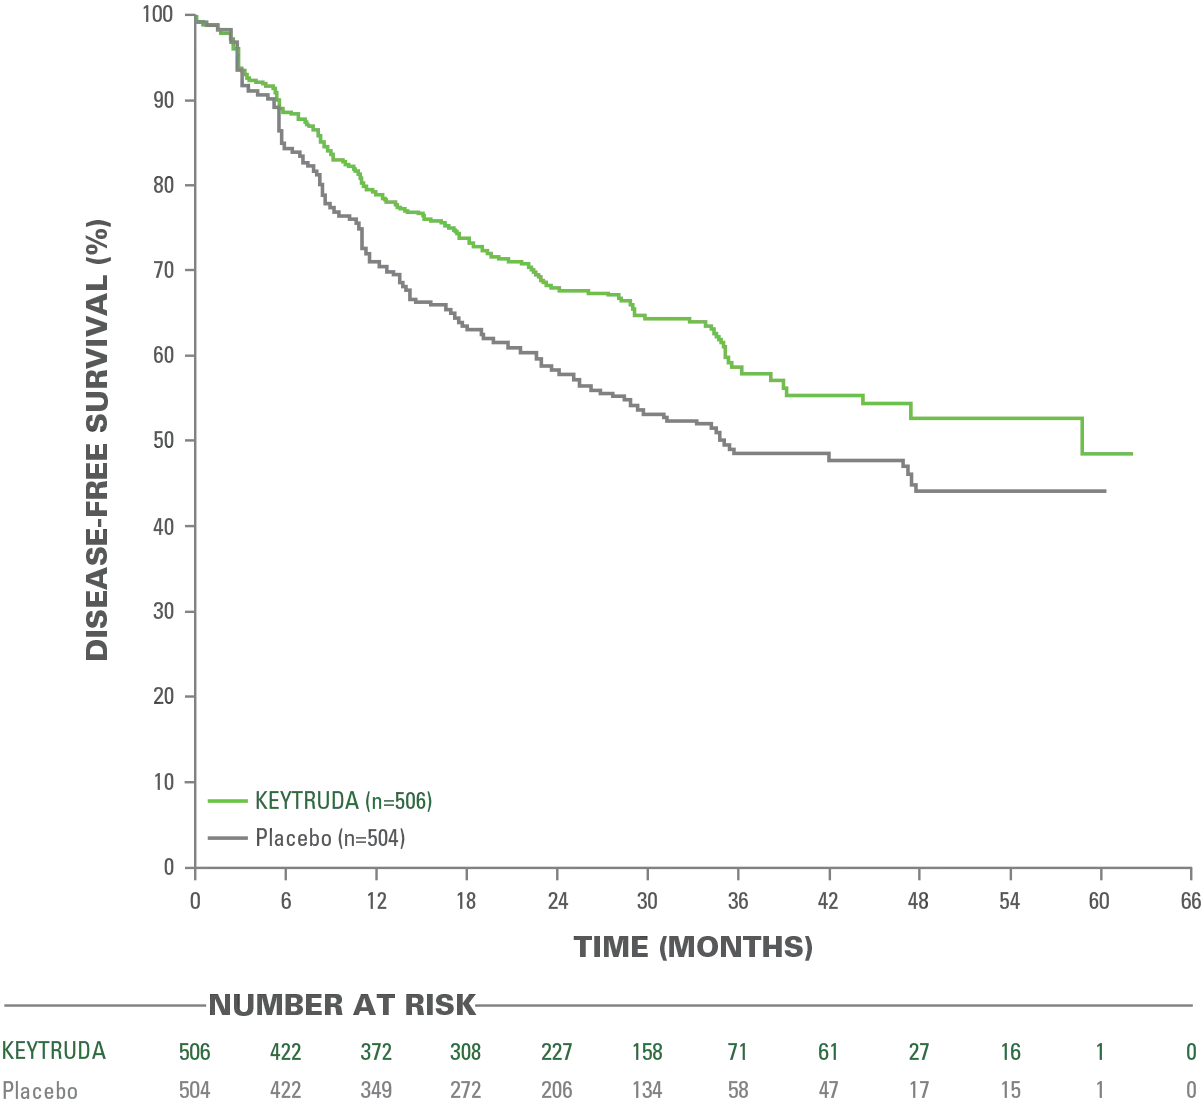 Kaplan-Meier Estimates of Disease-Free Survival (DFS) in KEYNOTE-091